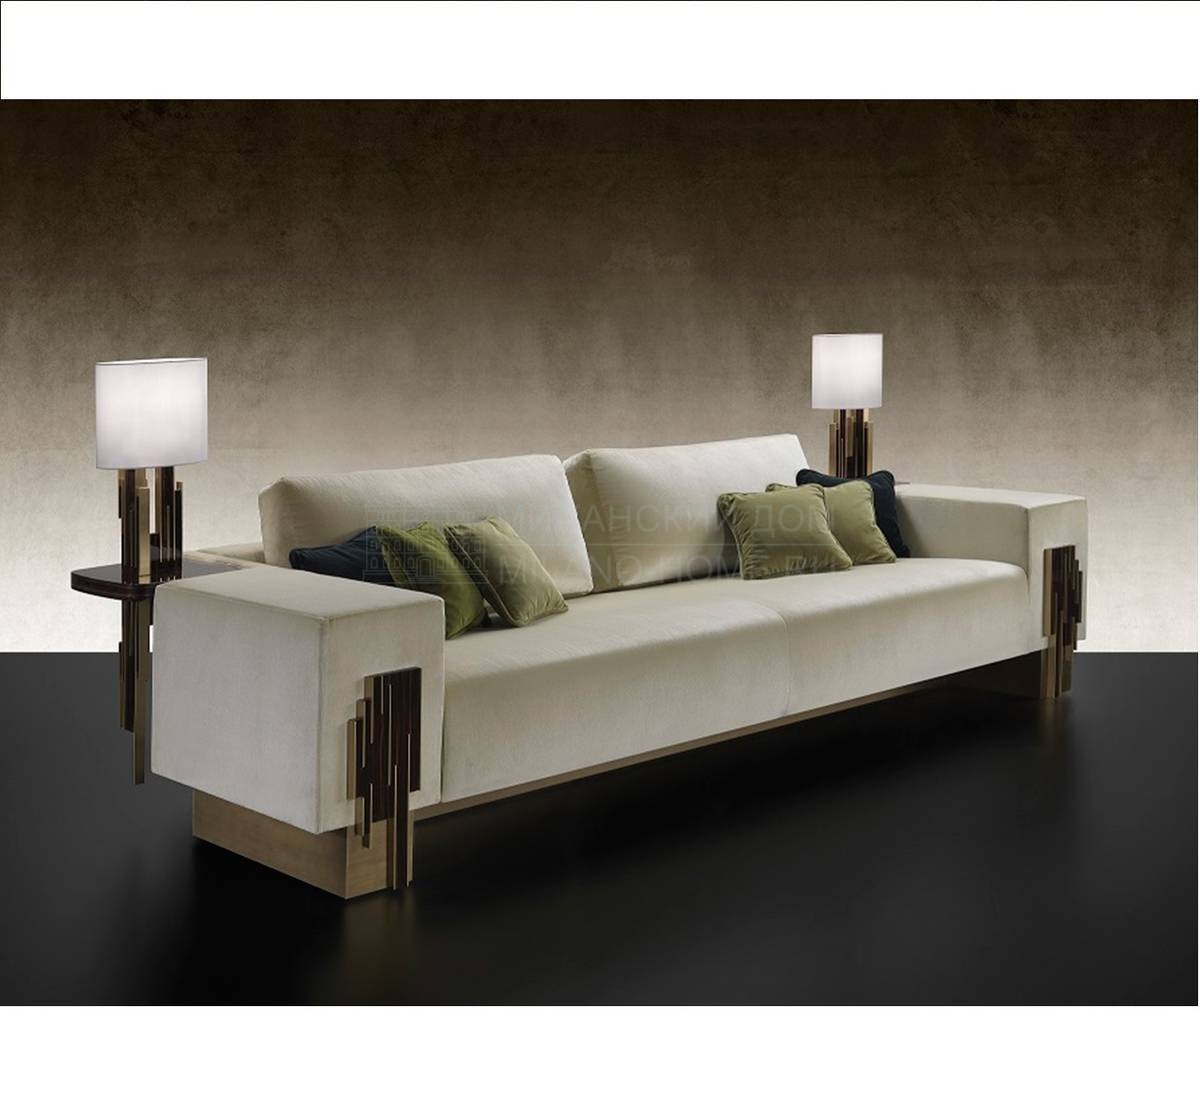 Прямой диван Belle Epoque Sofa из Италии фабрики REFLEX ANGELO